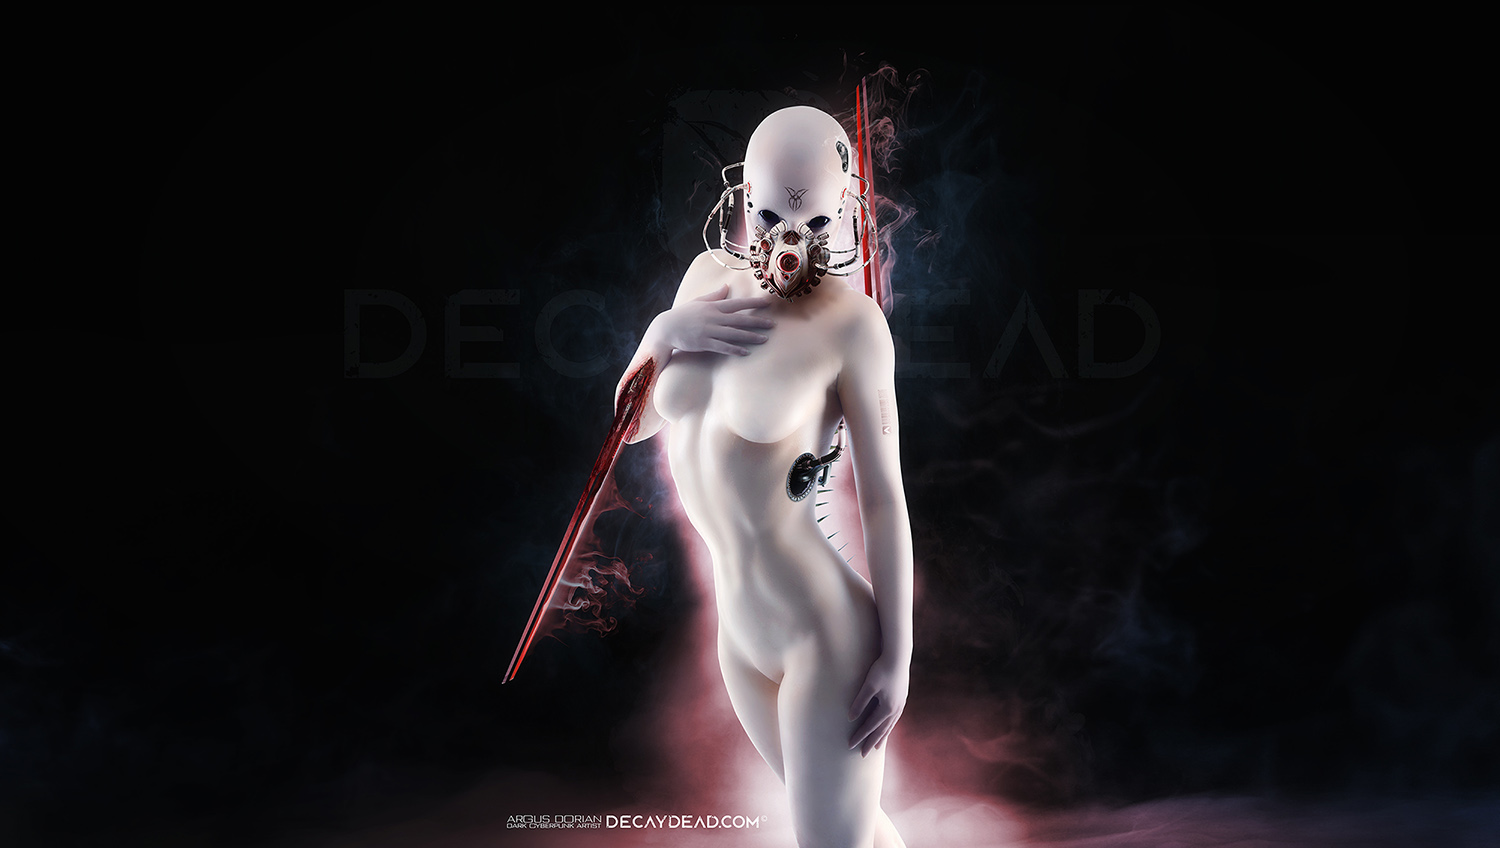 Elina The Hybrid Assassin - Her Death - by Argus Dorian